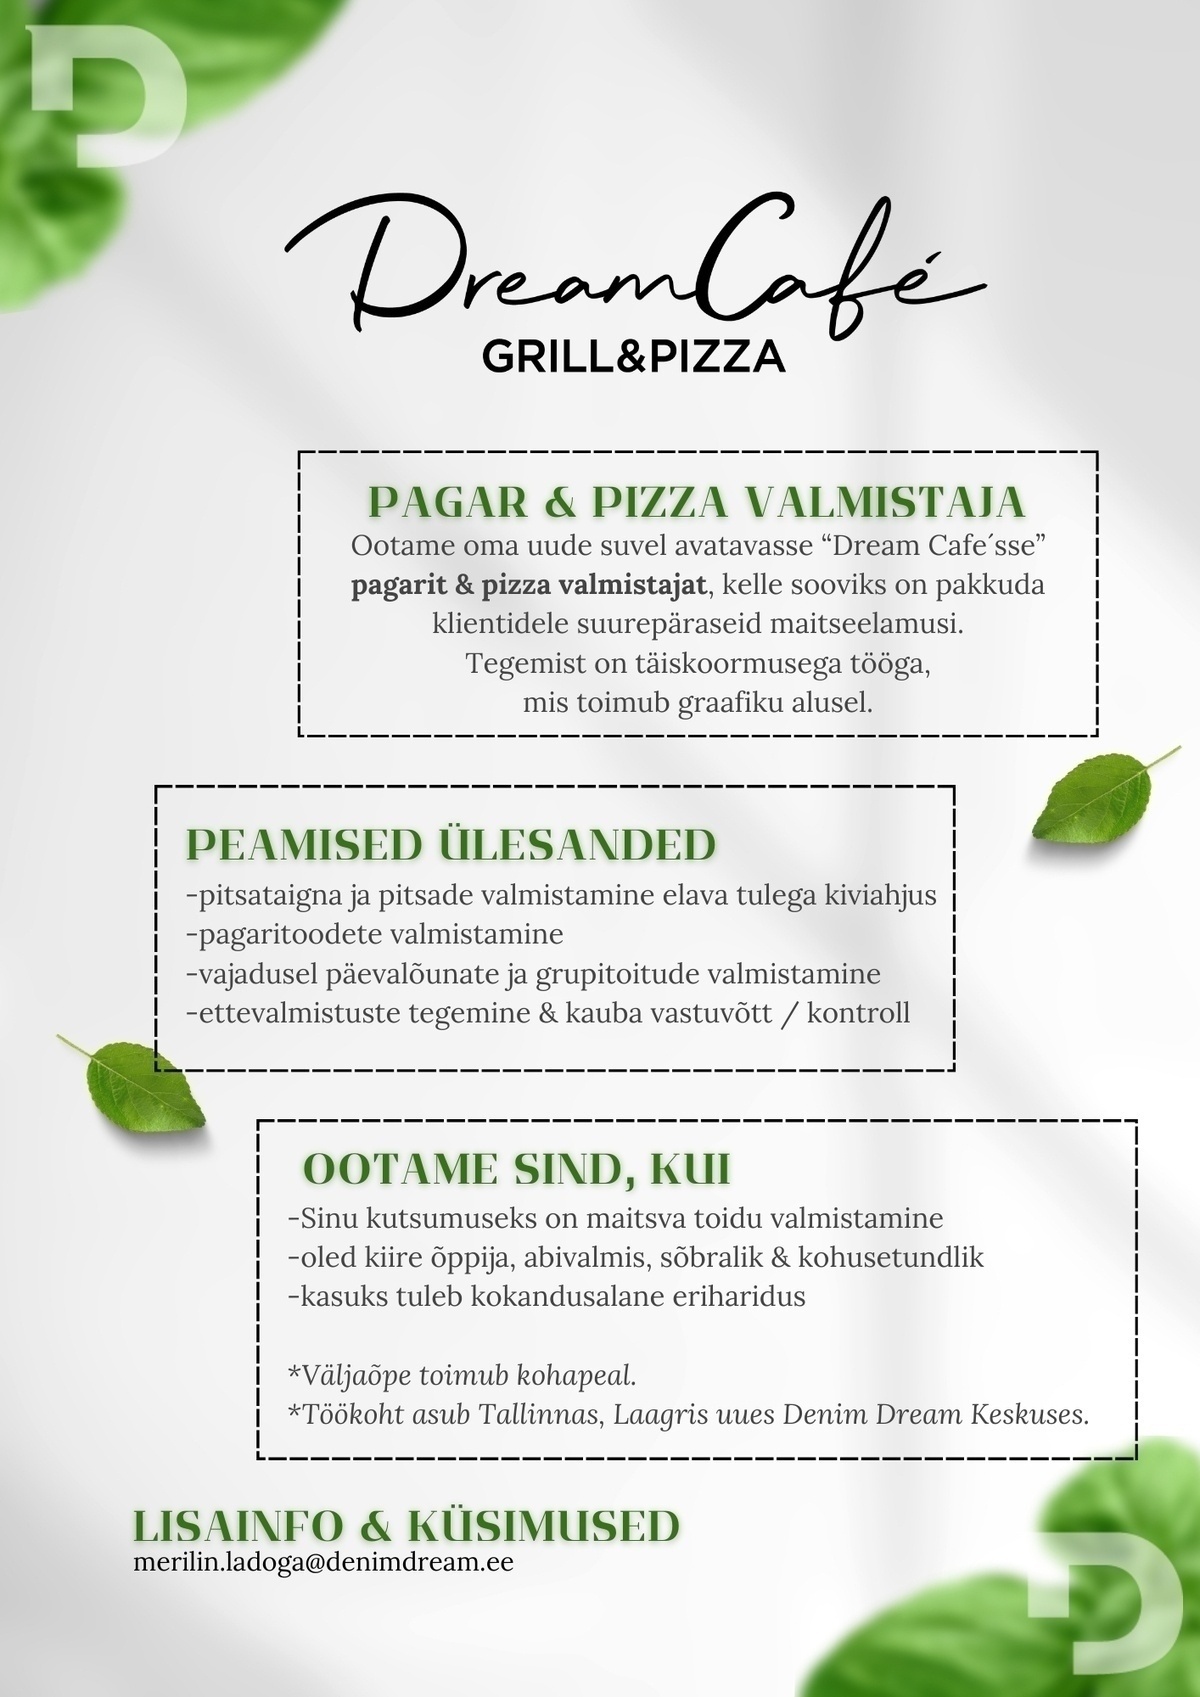 Põldma Kaubanduse AS PAGAR & PIZZA valmistaja uude avatavasse "Dream Cafe"´sse